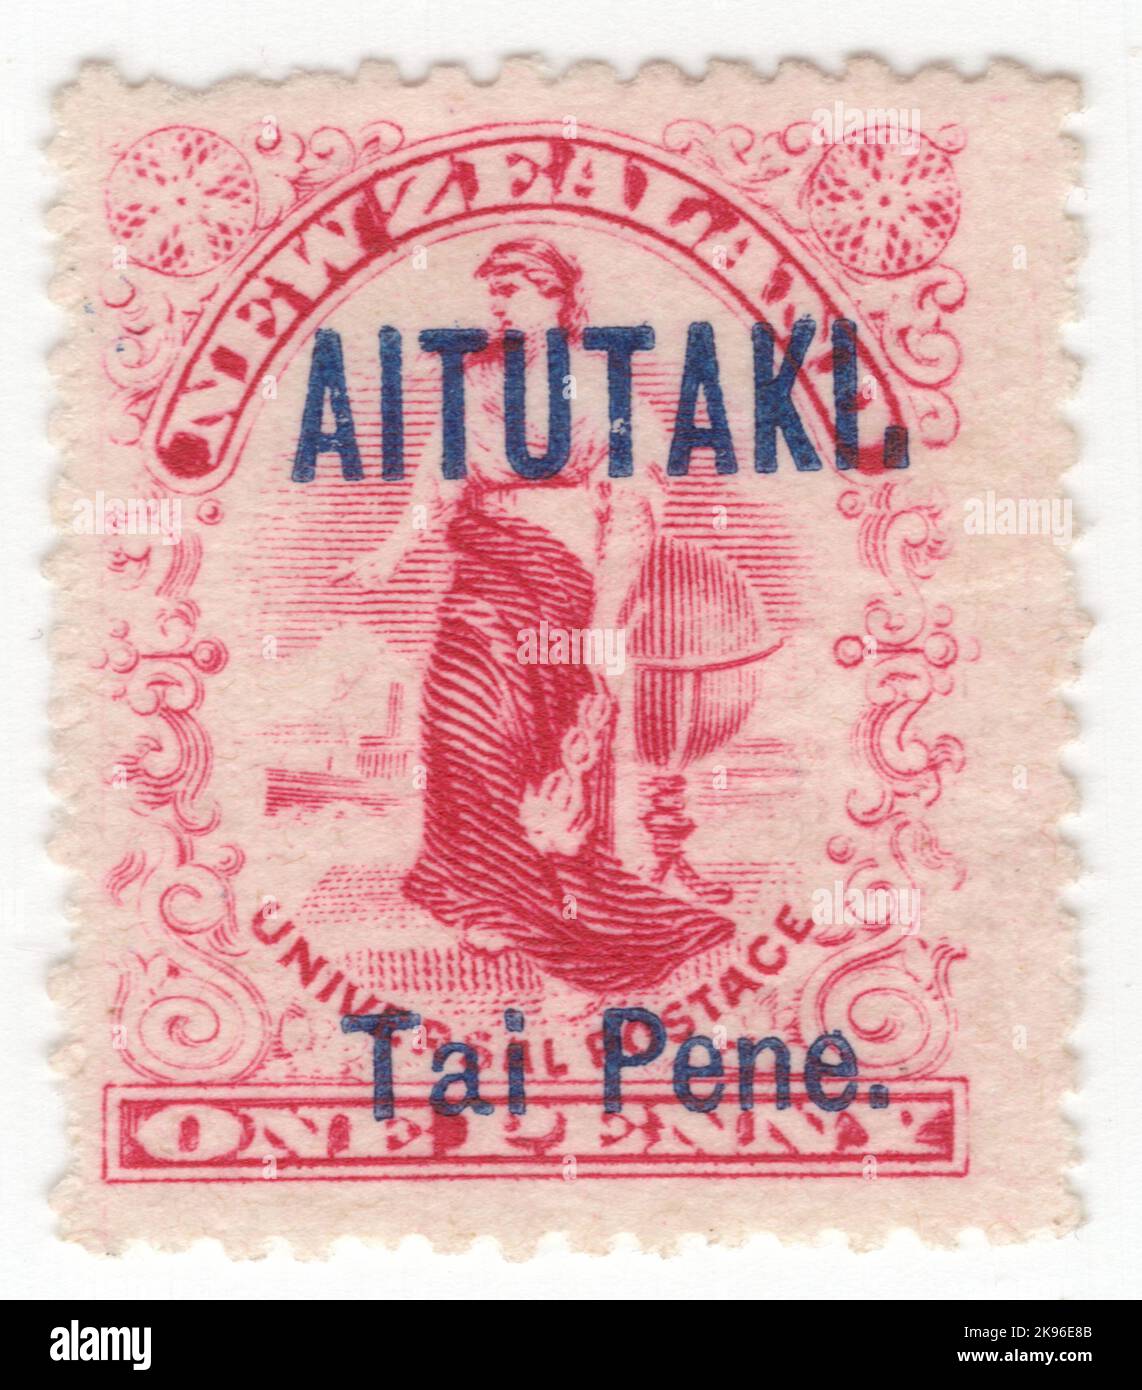 AITUTAKI - VERS 1903: Un timbre-poste rose carmine de 1 pence représentant l'allégorie 'Commerce'. Timbre de la Nouvelle-Zélande surimprimé 'AITUTAKI' et valeur en langue maternelle en bleu Banque D'Images